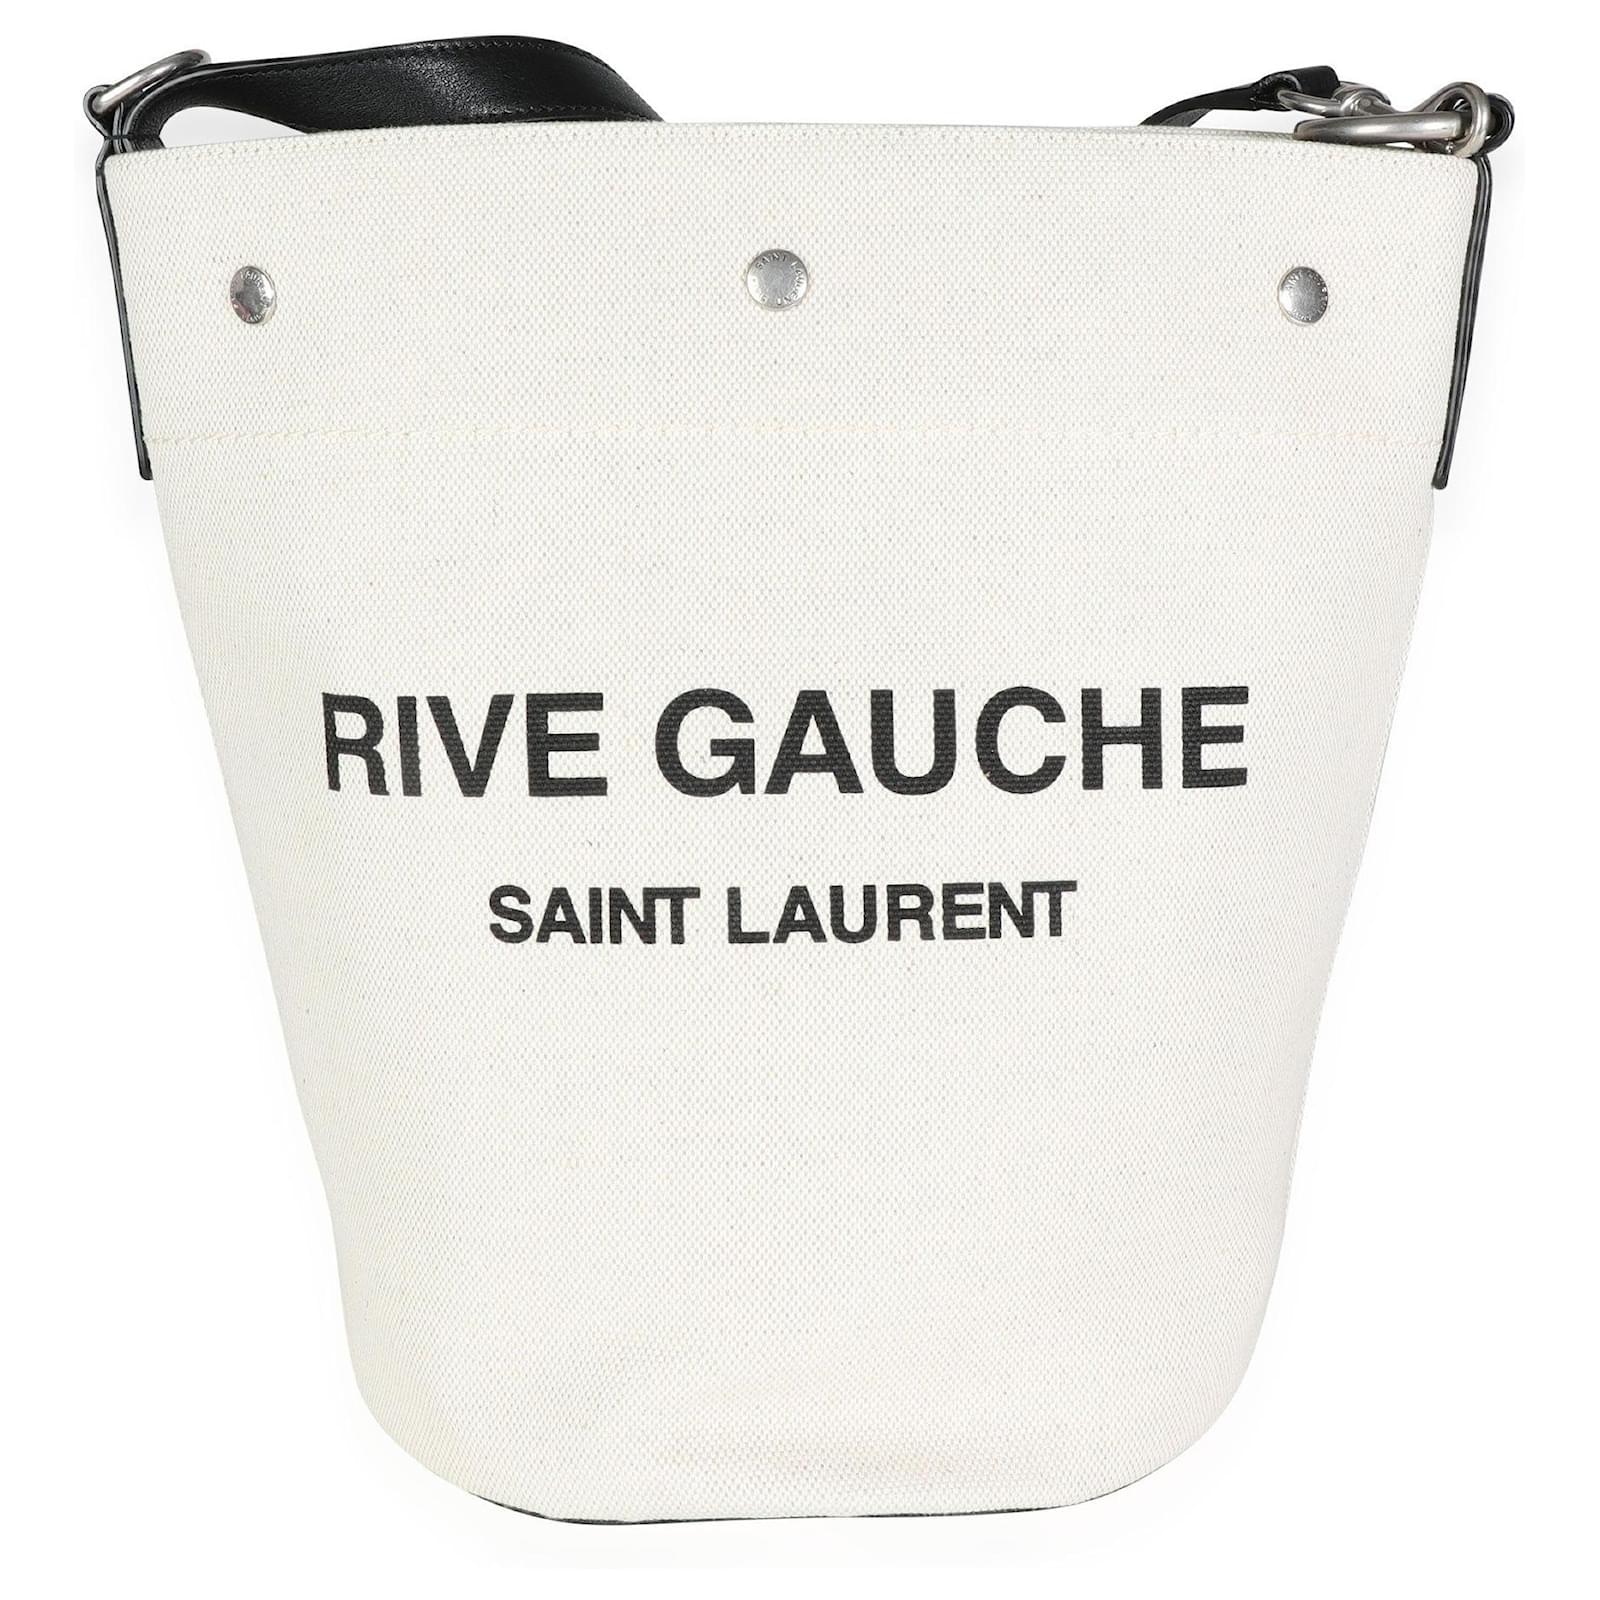 Saint Laurent Rive Gauche Leather Tote Bag - Neutrals